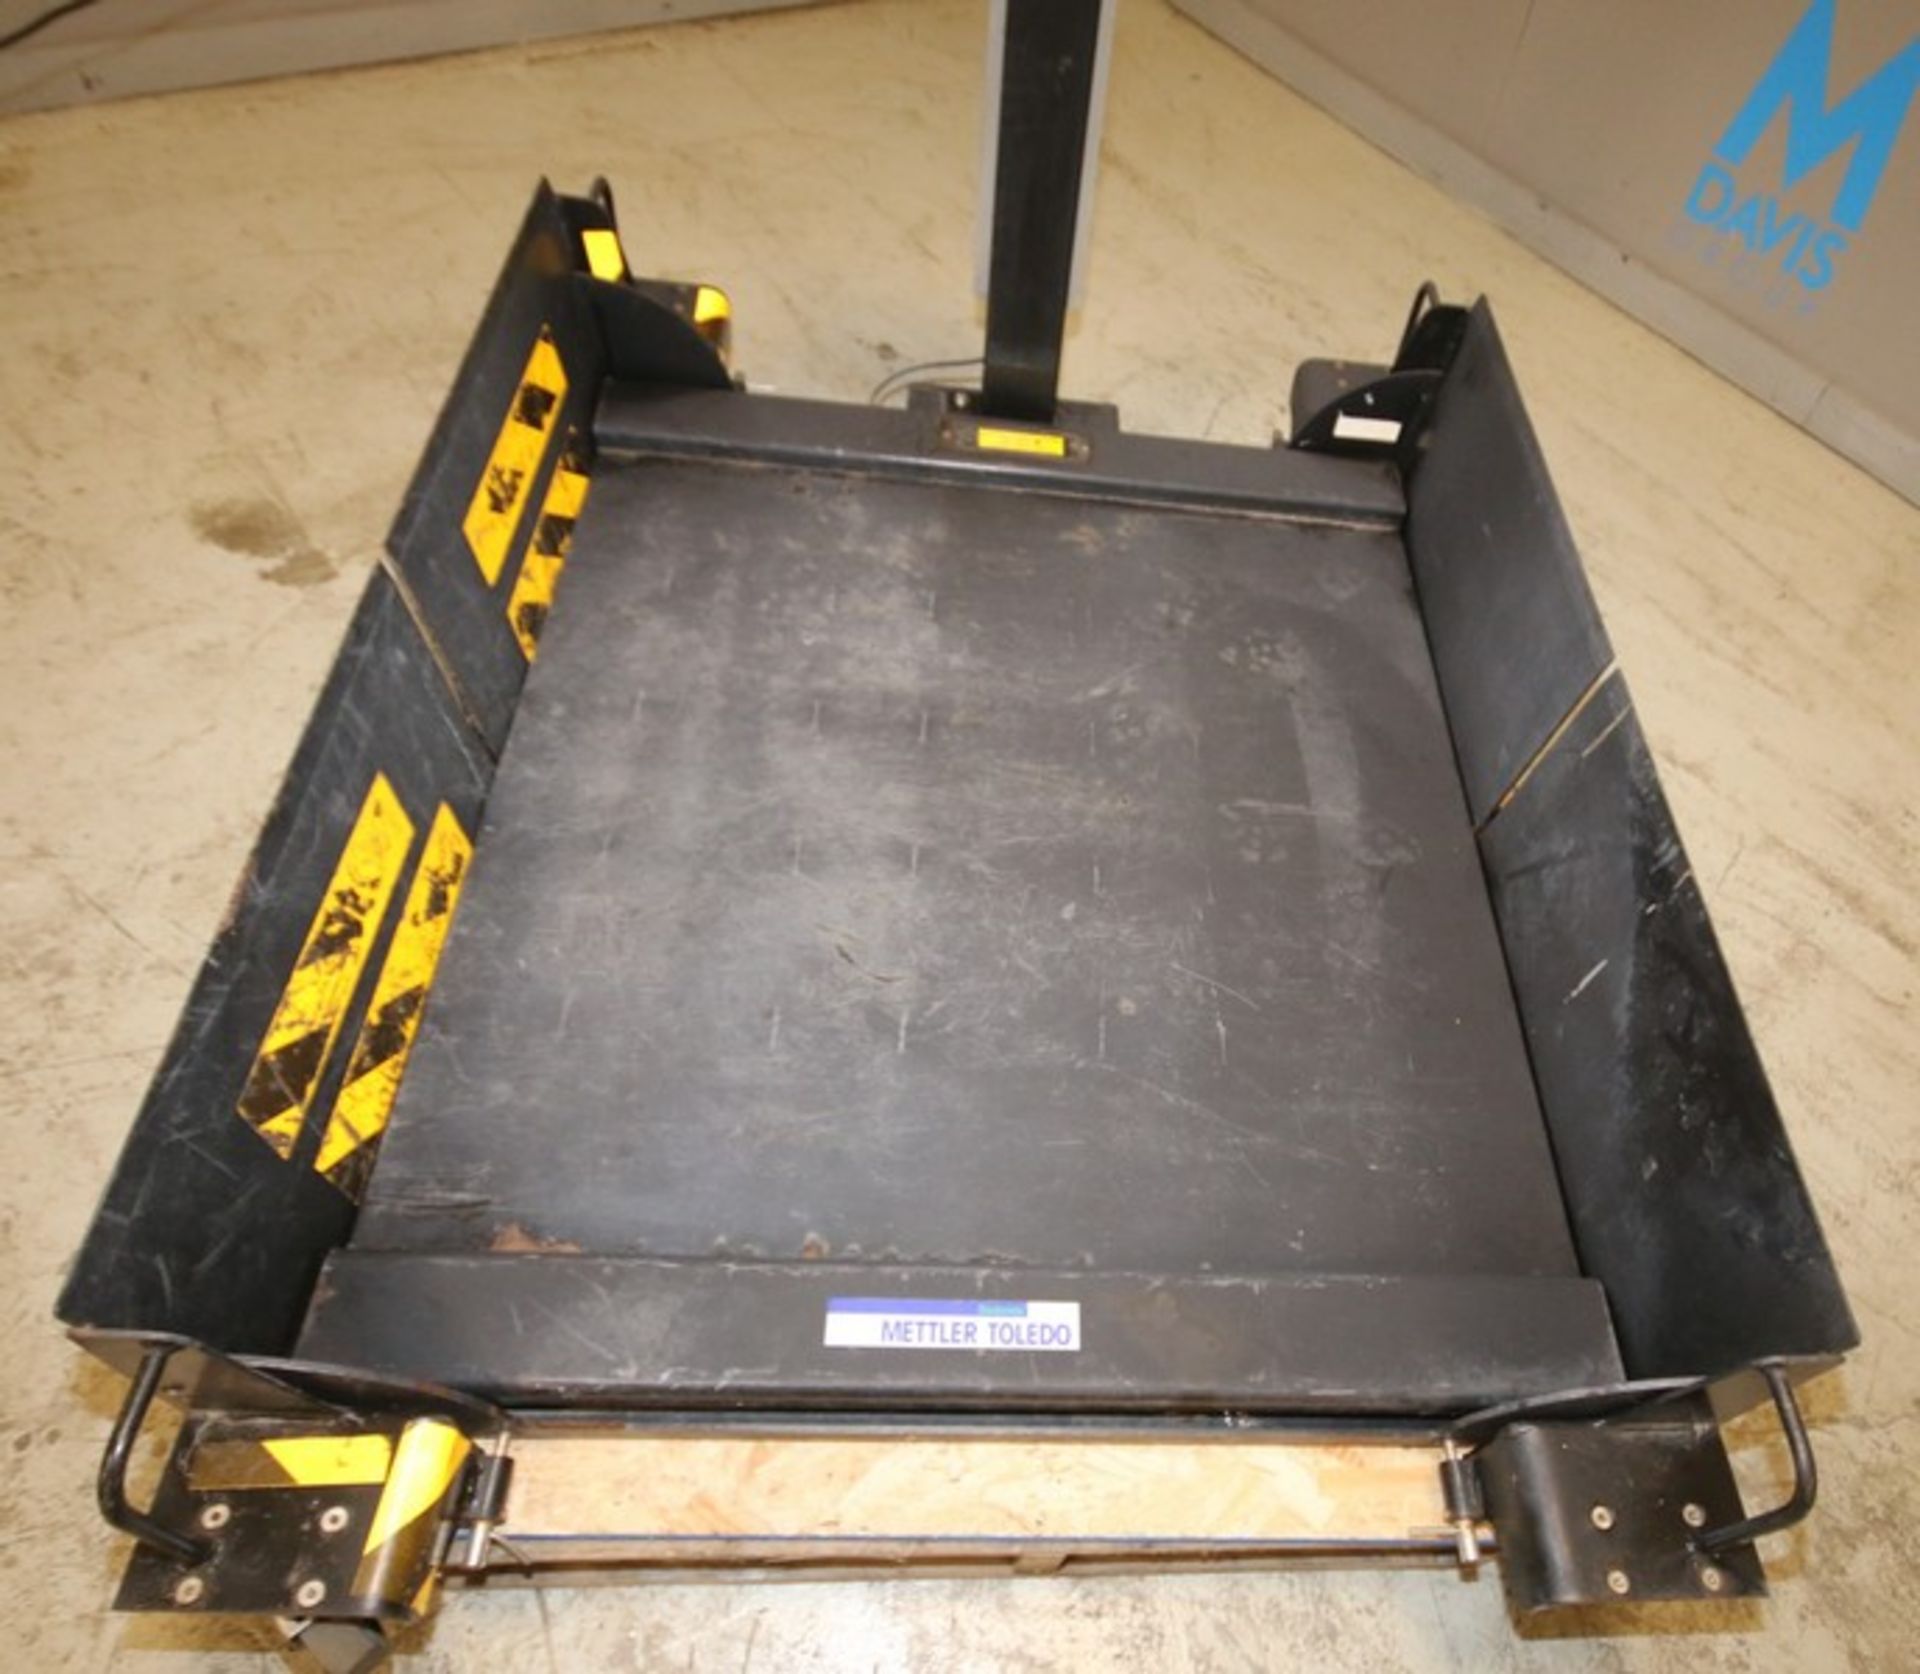 Mettler Toledo Portable Digital Platform Scale, Model IND560 Harsh, SN 0097899-6HK, with 42" x 42" - Image 2 of 5